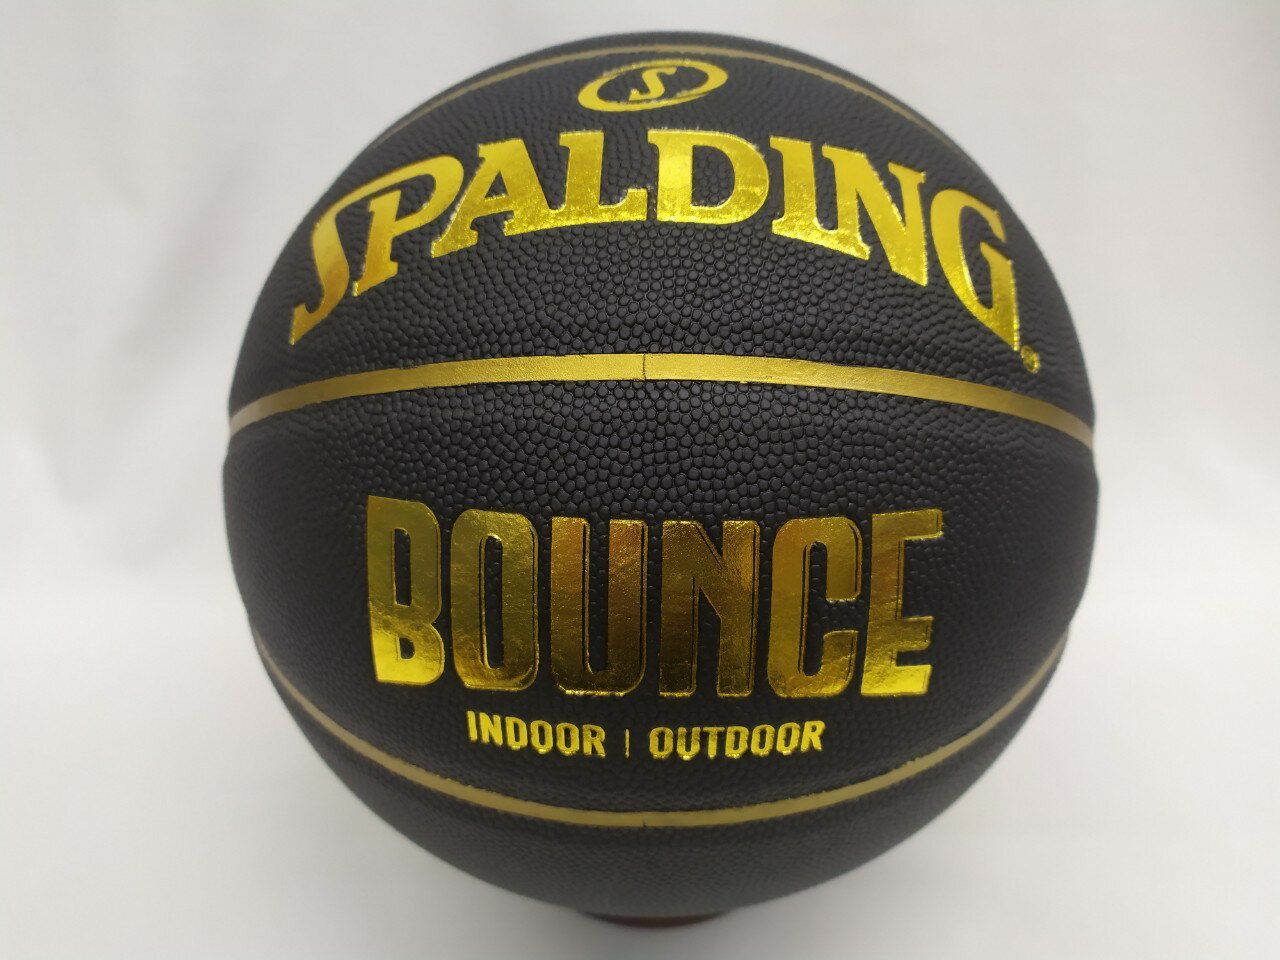 斯伯丁 籃球 SPALDING BOUNCE 籃球 PU材質 標準7號球 室內外專用球SPB91003大自在